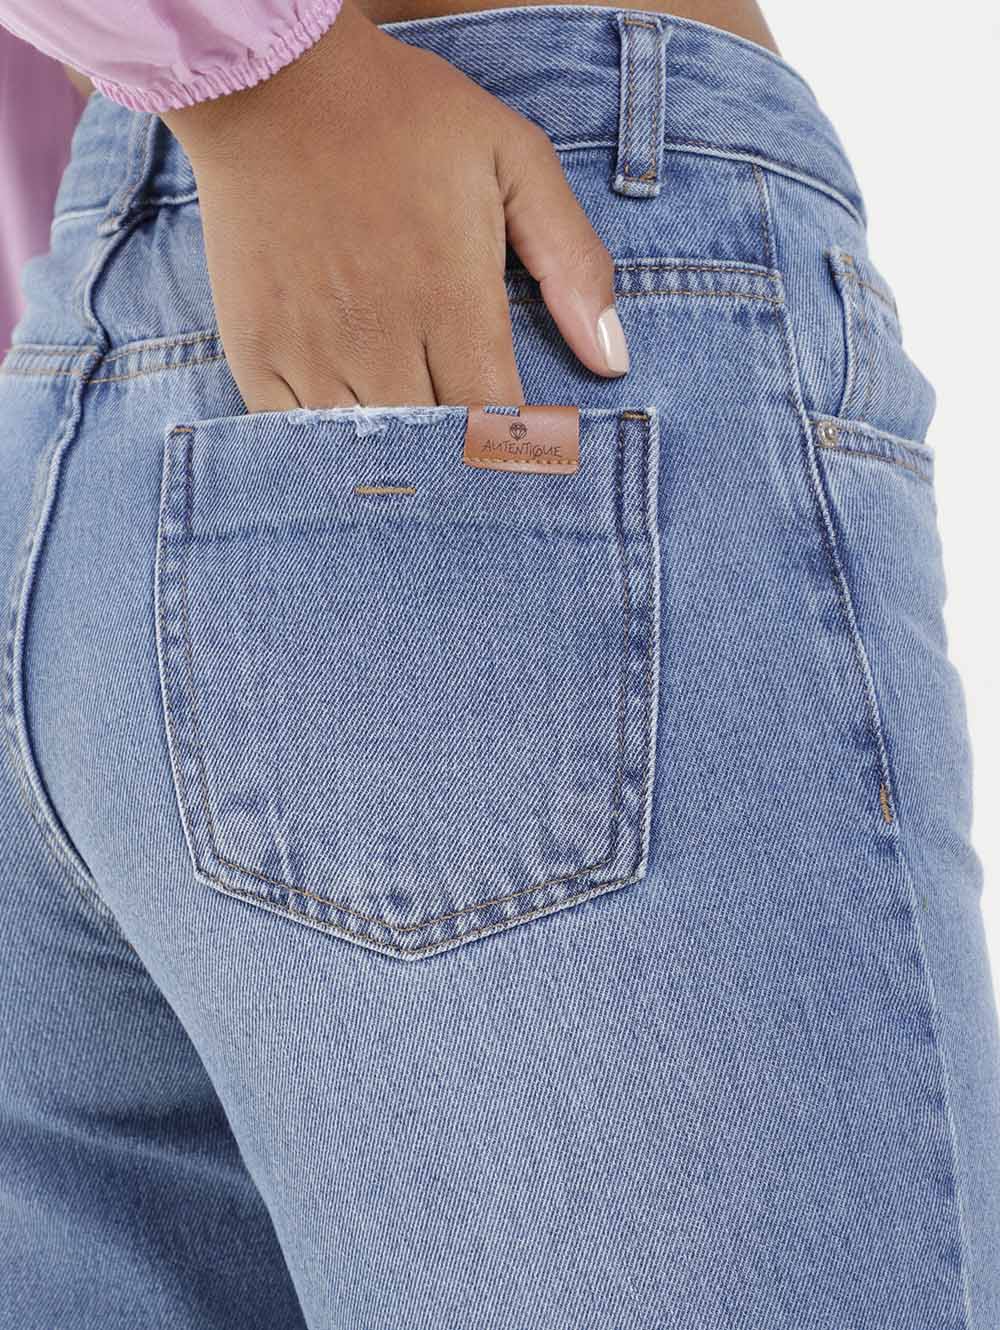 parte de trás da calça jeans wide leg para combinar com blazer cropped rosa